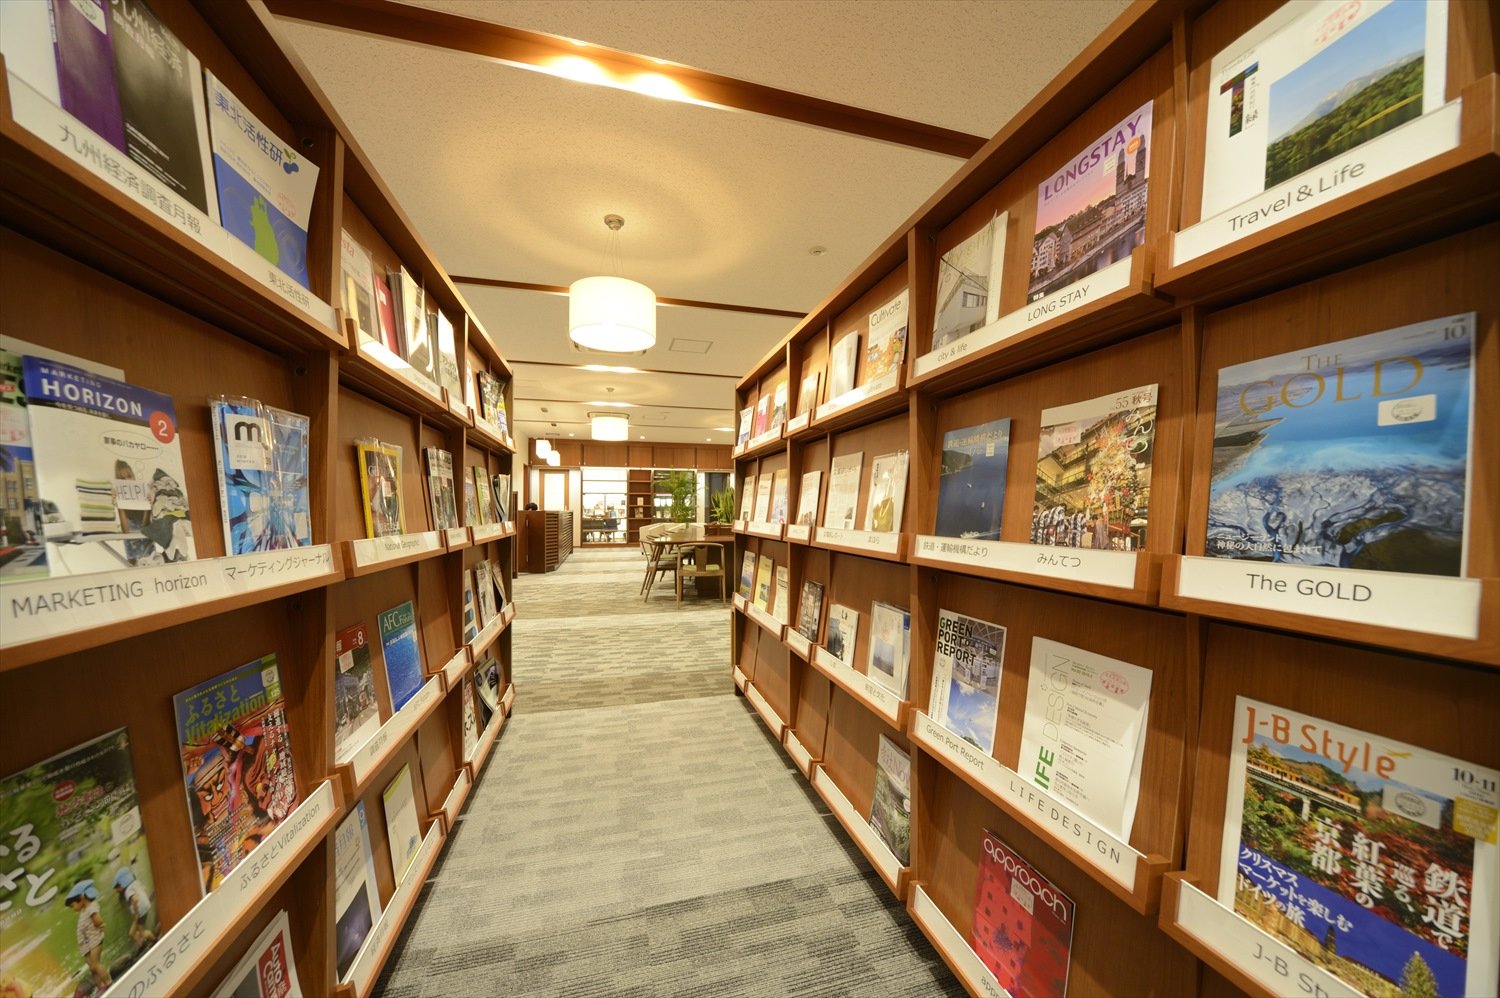 図書館で するのが夢 を叶える 東京で本に囲まれて過ごせる施設 さんたつ By 散歩の達人